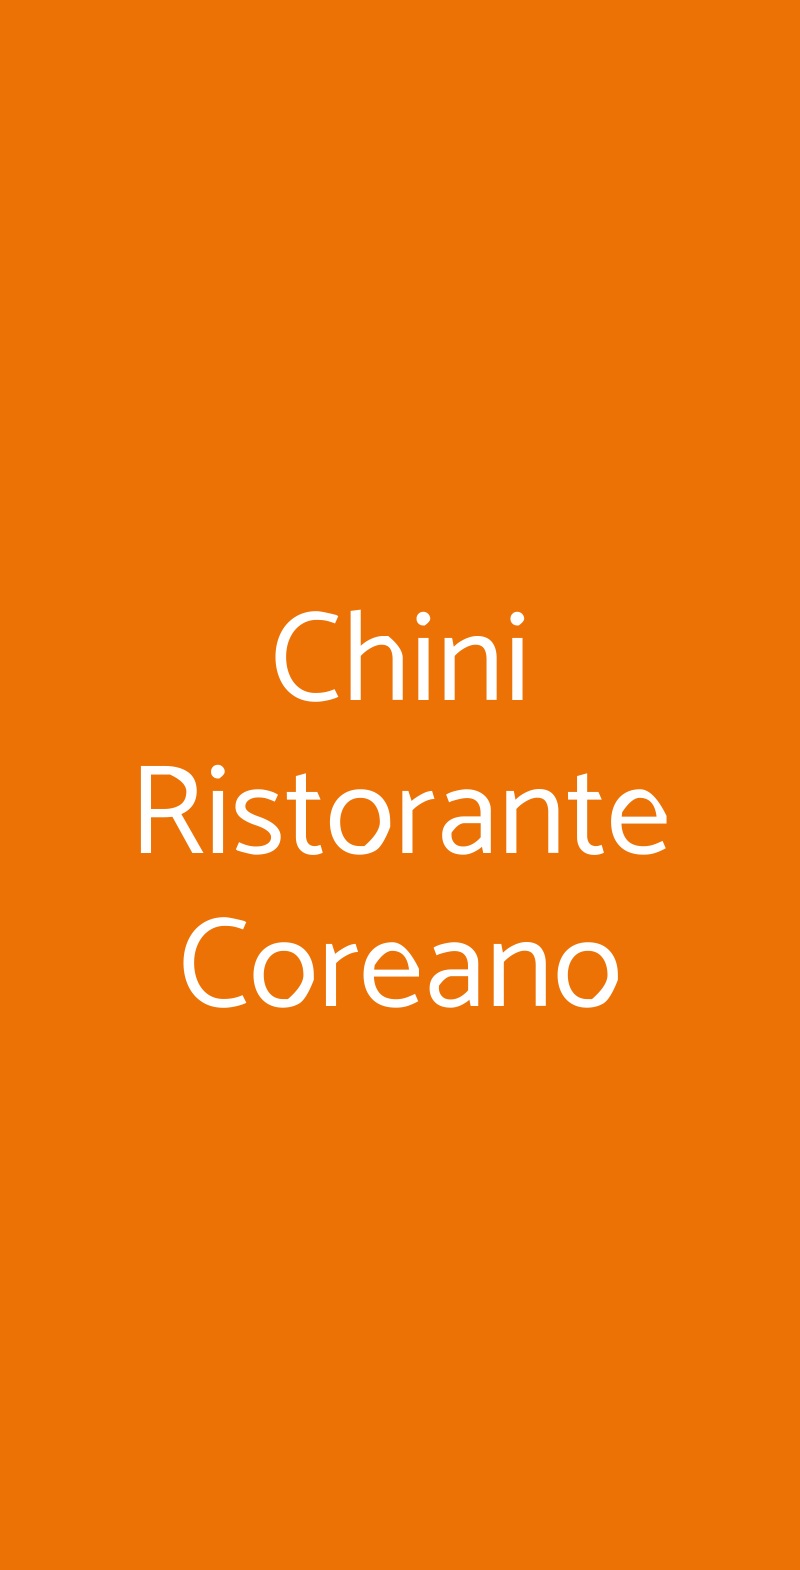 Chini Ristorante Coreano Milano menù 1 pagina